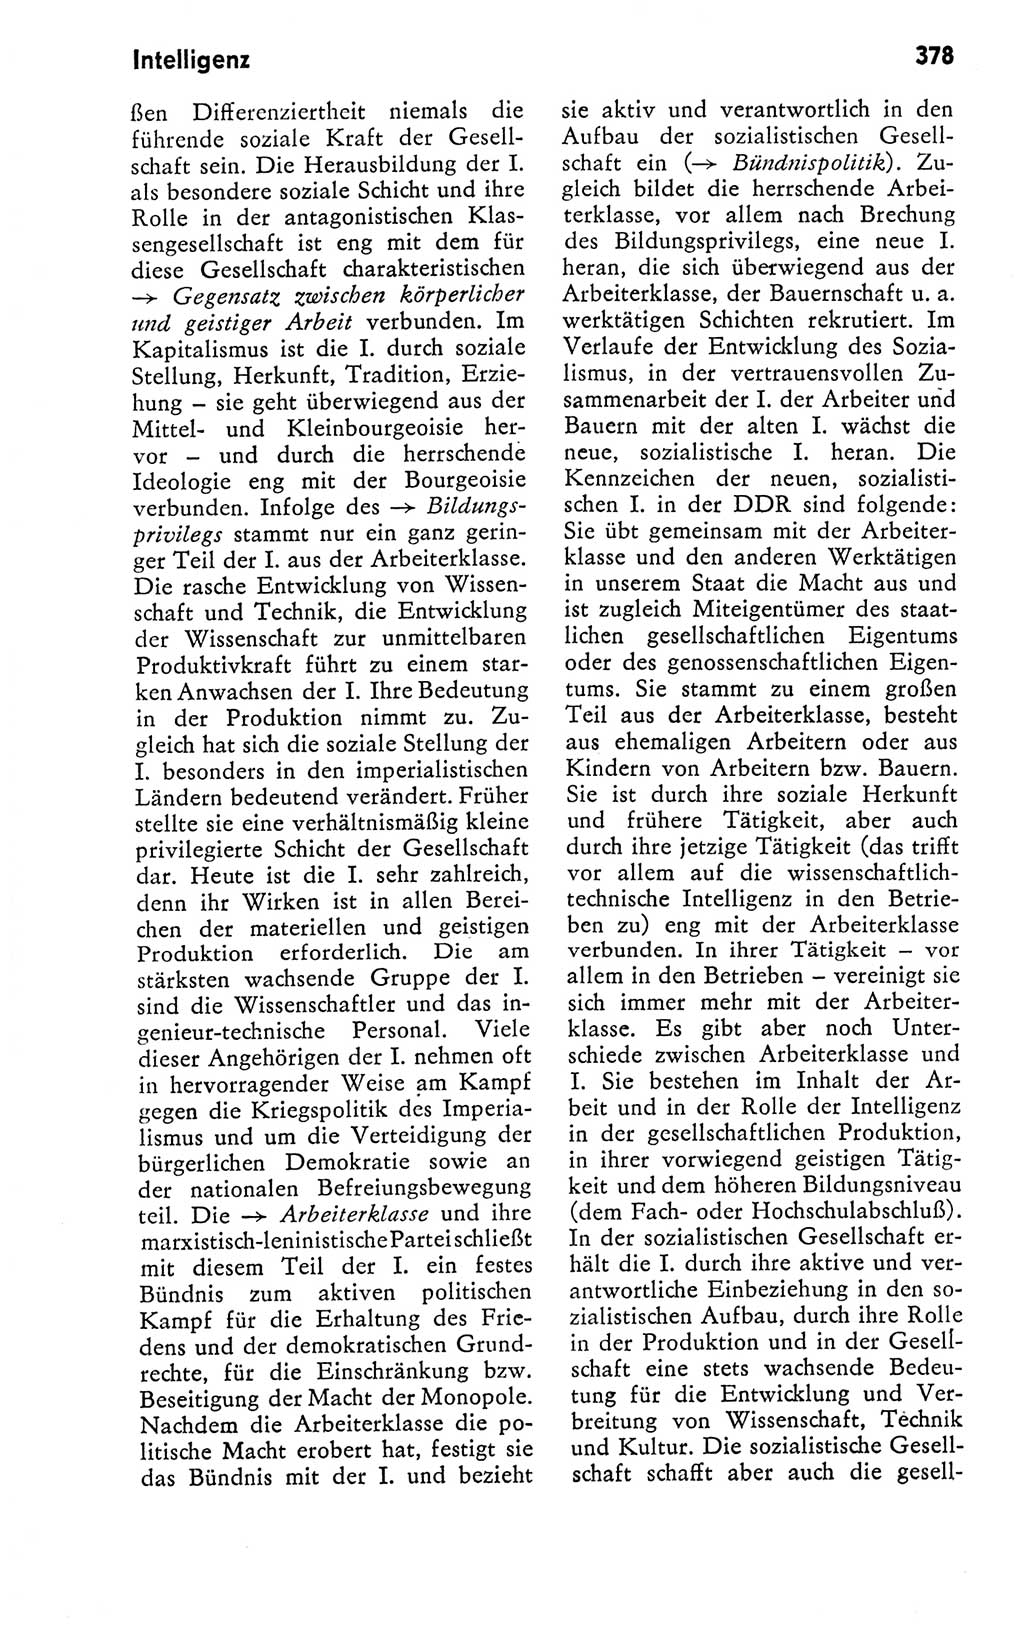 Kleines politisches Wörterbuch [Deutsche Demokratische Republik (DDR)] 1978, Seite 378 (Kl. pol. Wb. DDR 1978, S. 378)